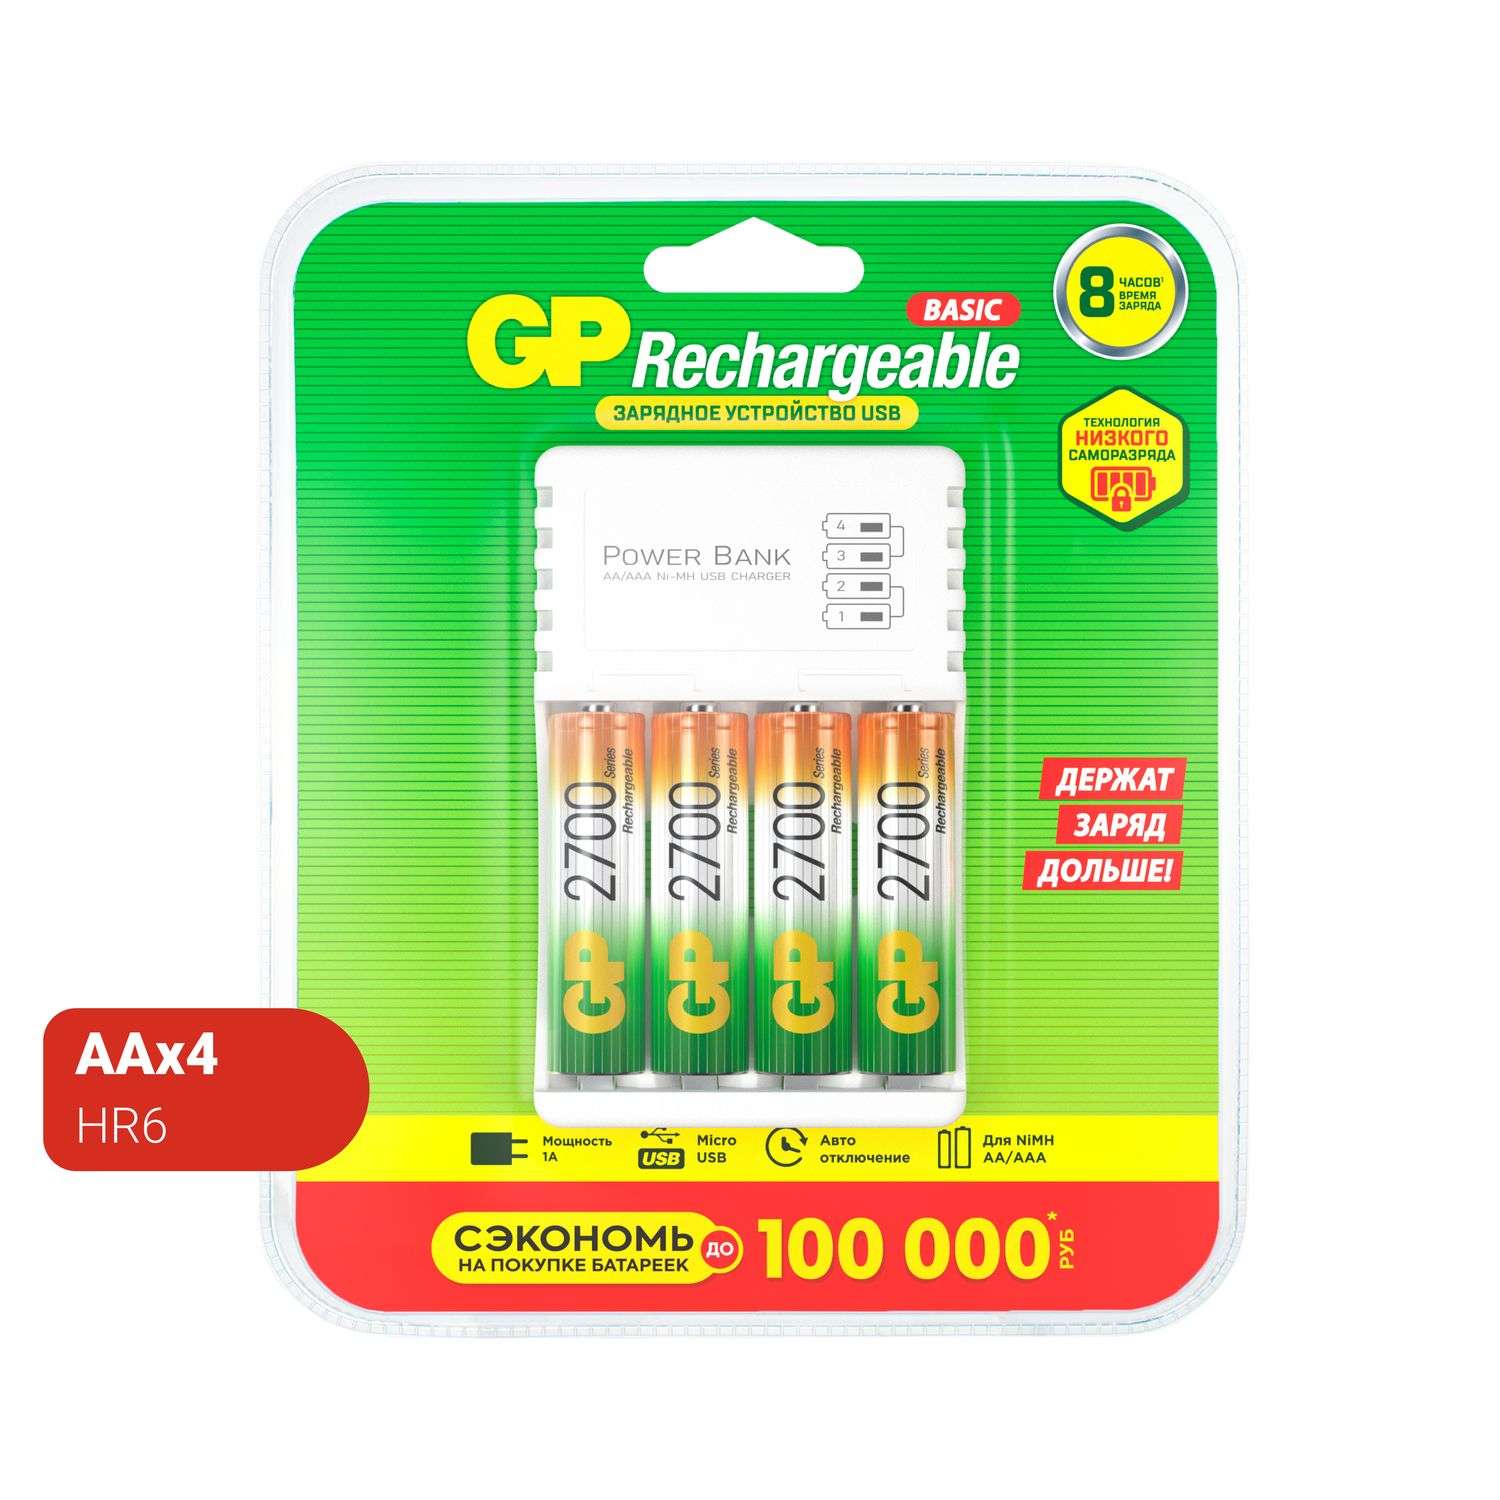 Аккумулятор GP АА HR6 2700мАч 4шт +зарядное устройство 8часов GP GP270AAHC/CPB-2CR4 - фото 1